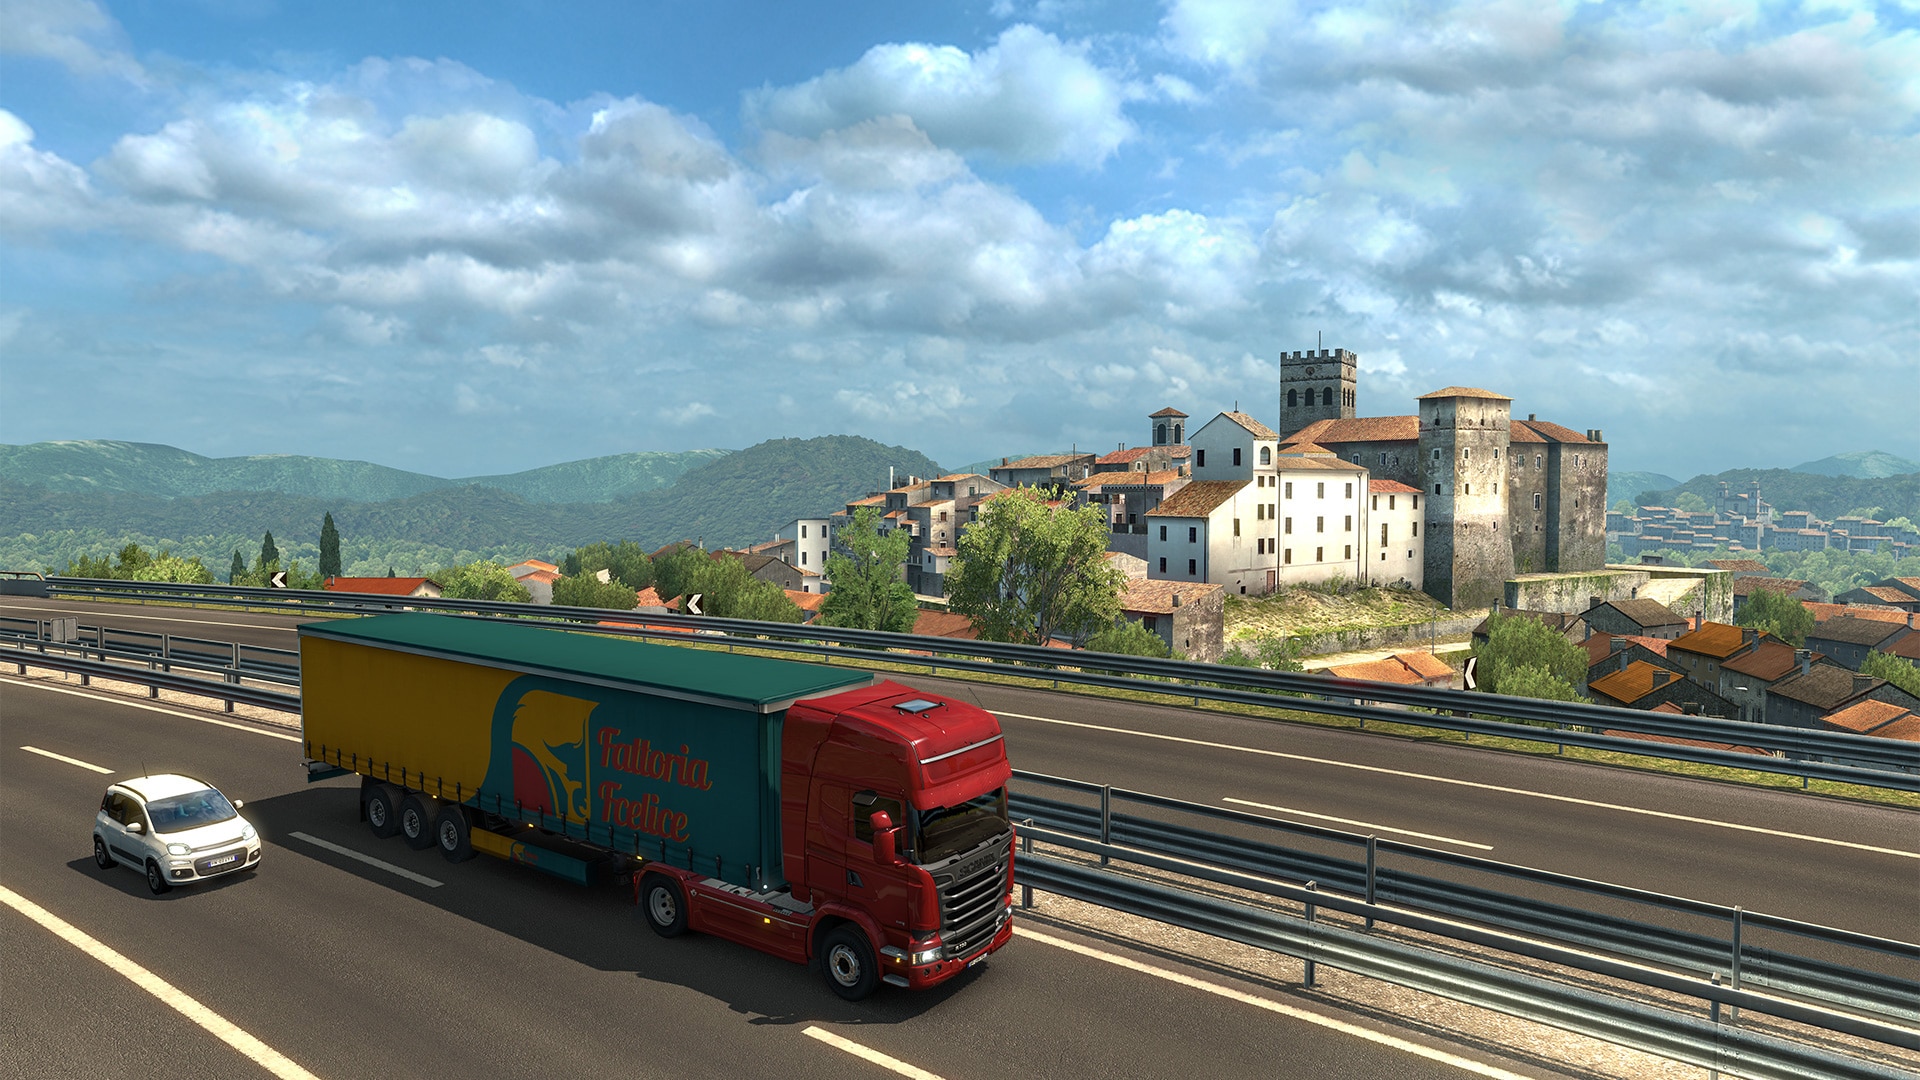 euro truck simulator 2 crack update